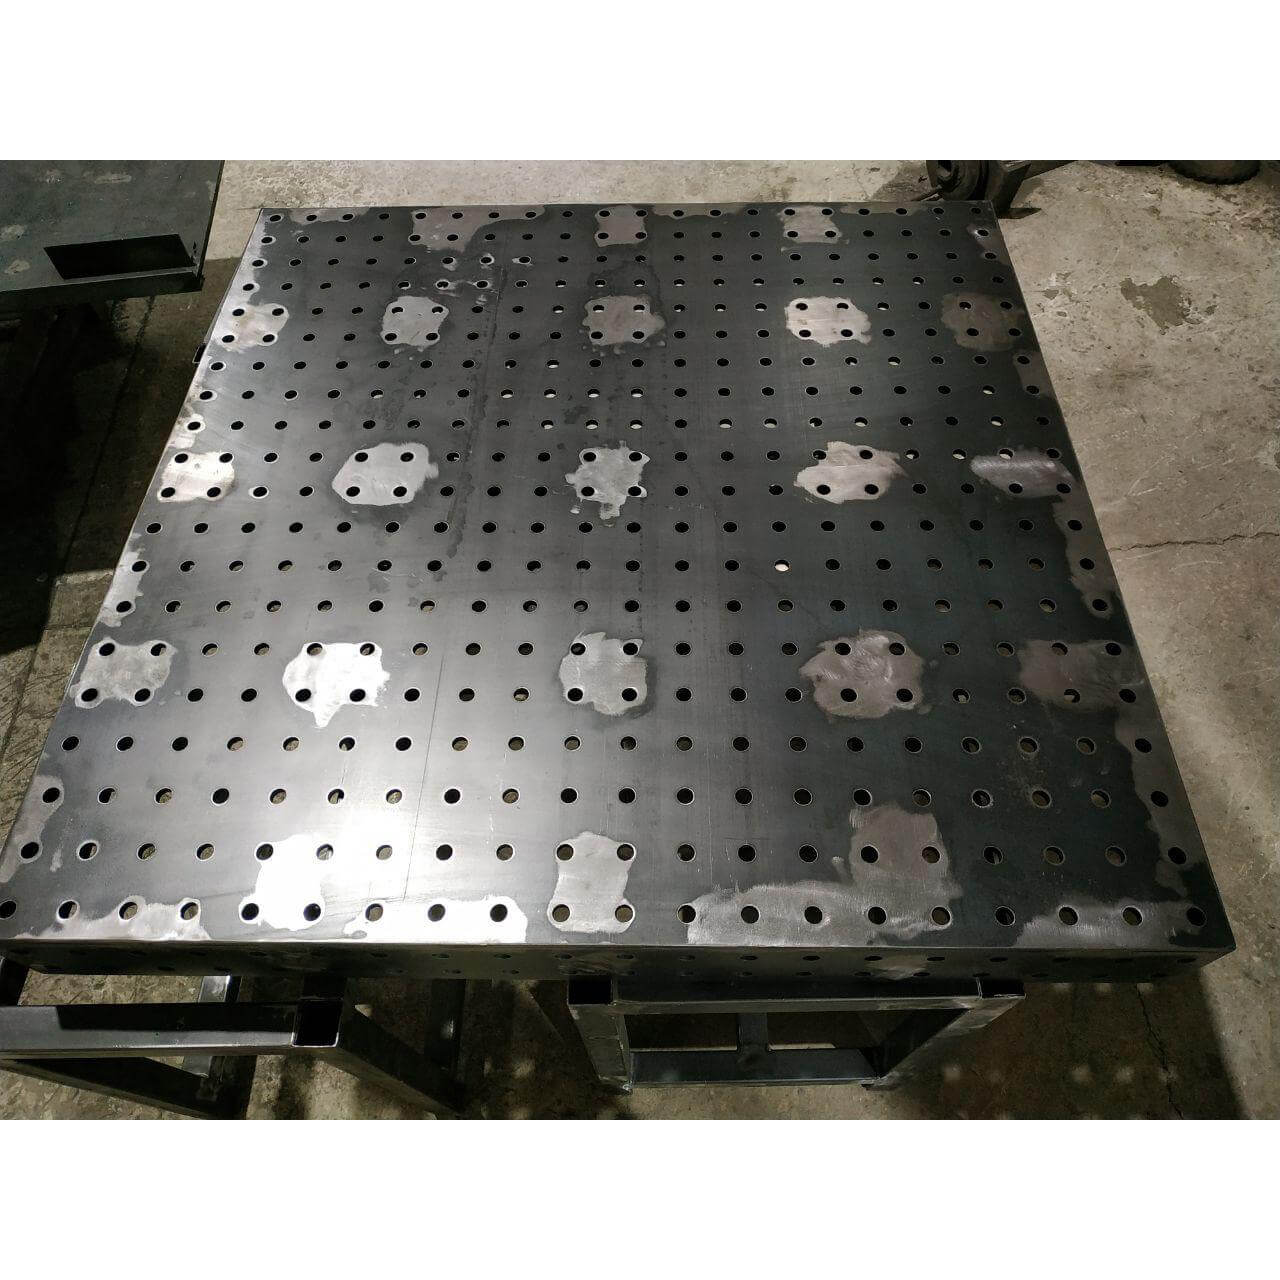 стол сварочный сборочный с отверстиями 16 мм толщиной 6 8 10 12